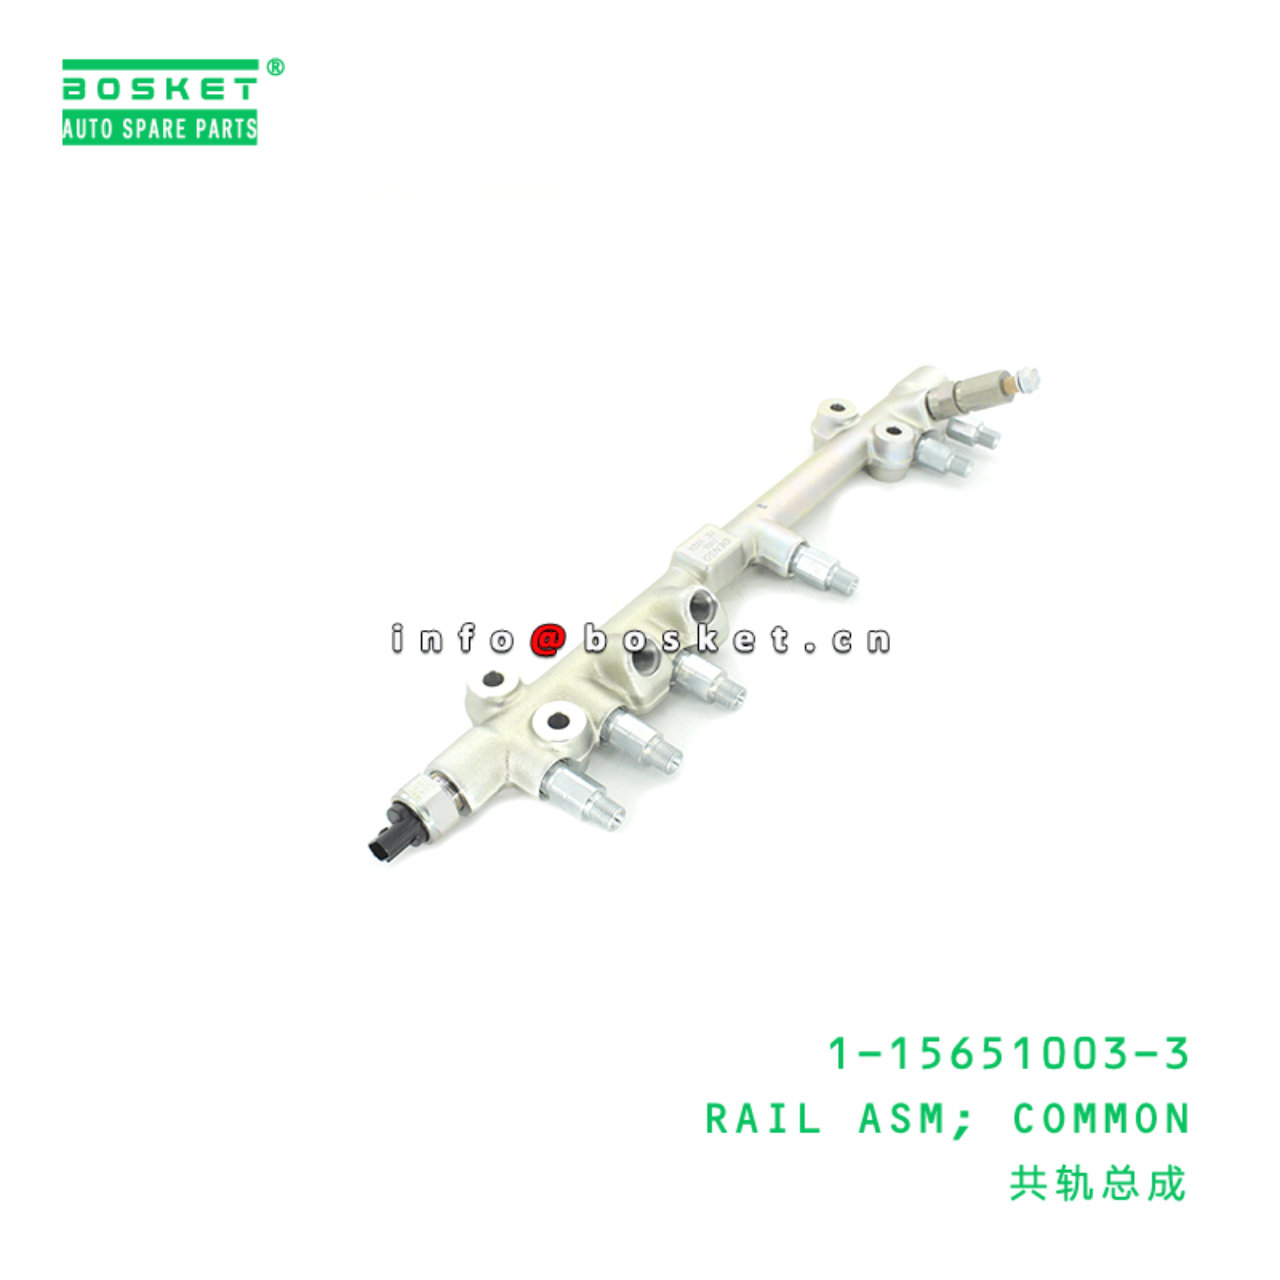 1-15651003-3 Common Rail Assembly 1156510033 Suitable for ISUZU CYZ CXZ